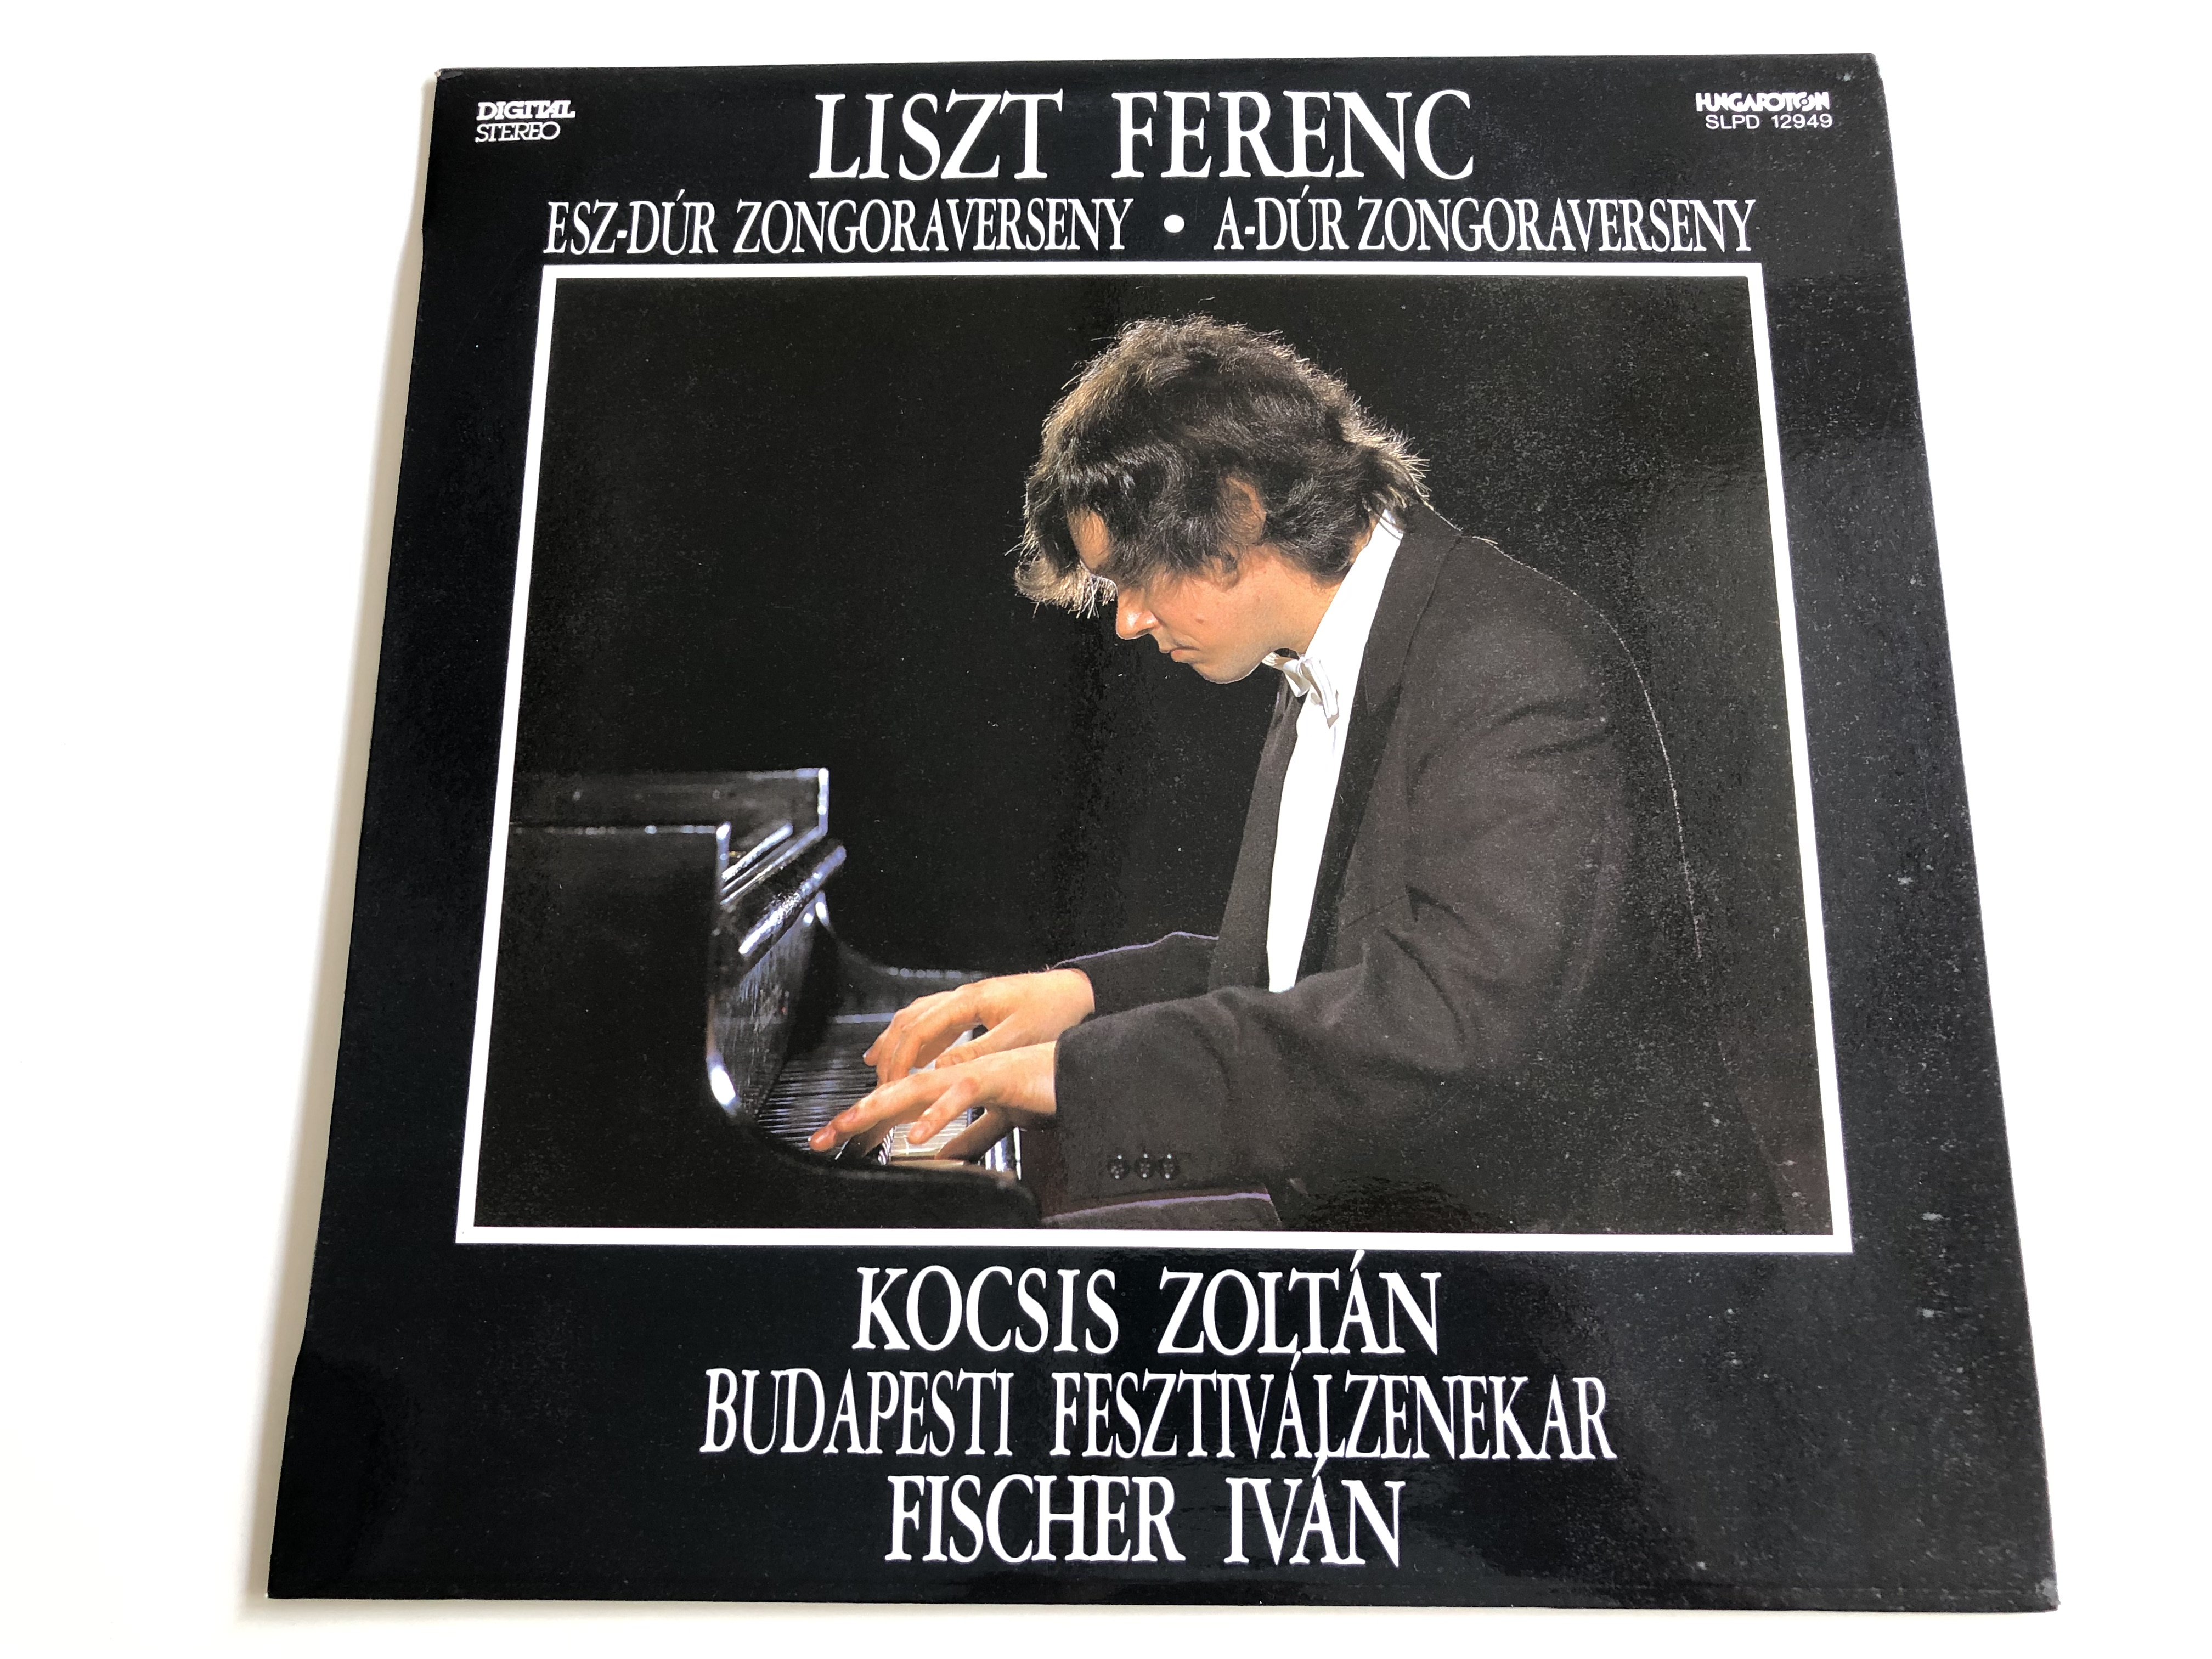 liszt-ferenc-esz-d-r-zongoraverseny-a-d-r-zongoraverseny-kocsis-zolt-n-conducted-fischer-ivan-budapesti-fesztiv-lzenekar-hungaroton-lp-stereo-slpd-12949-1-.jpg